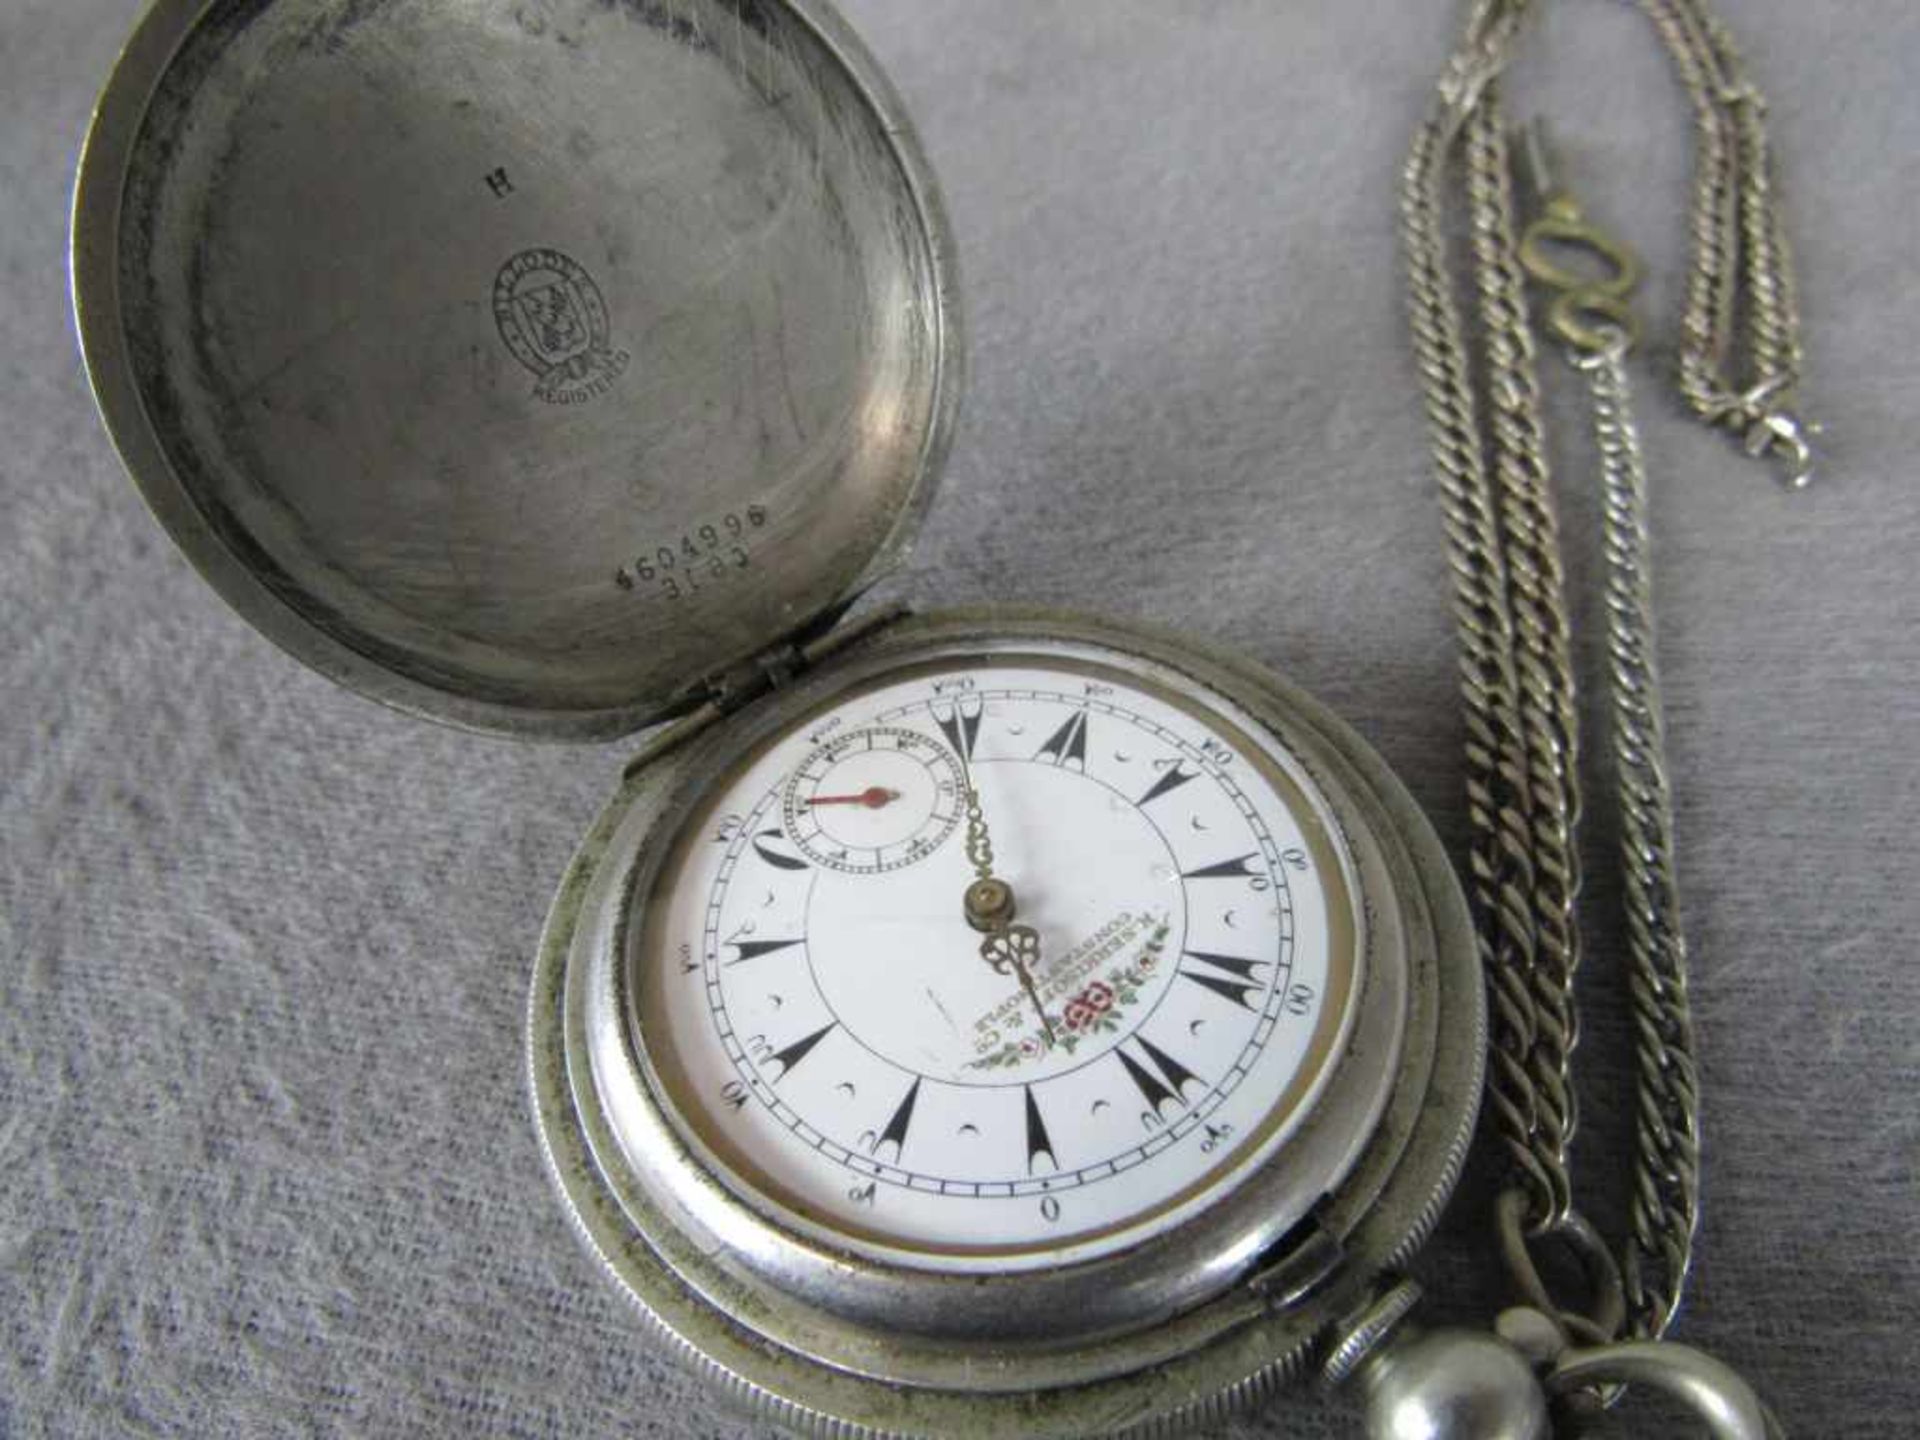 Taschenuhr um 1850 Durchmesser ca.55mm die Uhr läuft nicht an.3 Deckel - Bild 2 aus 3